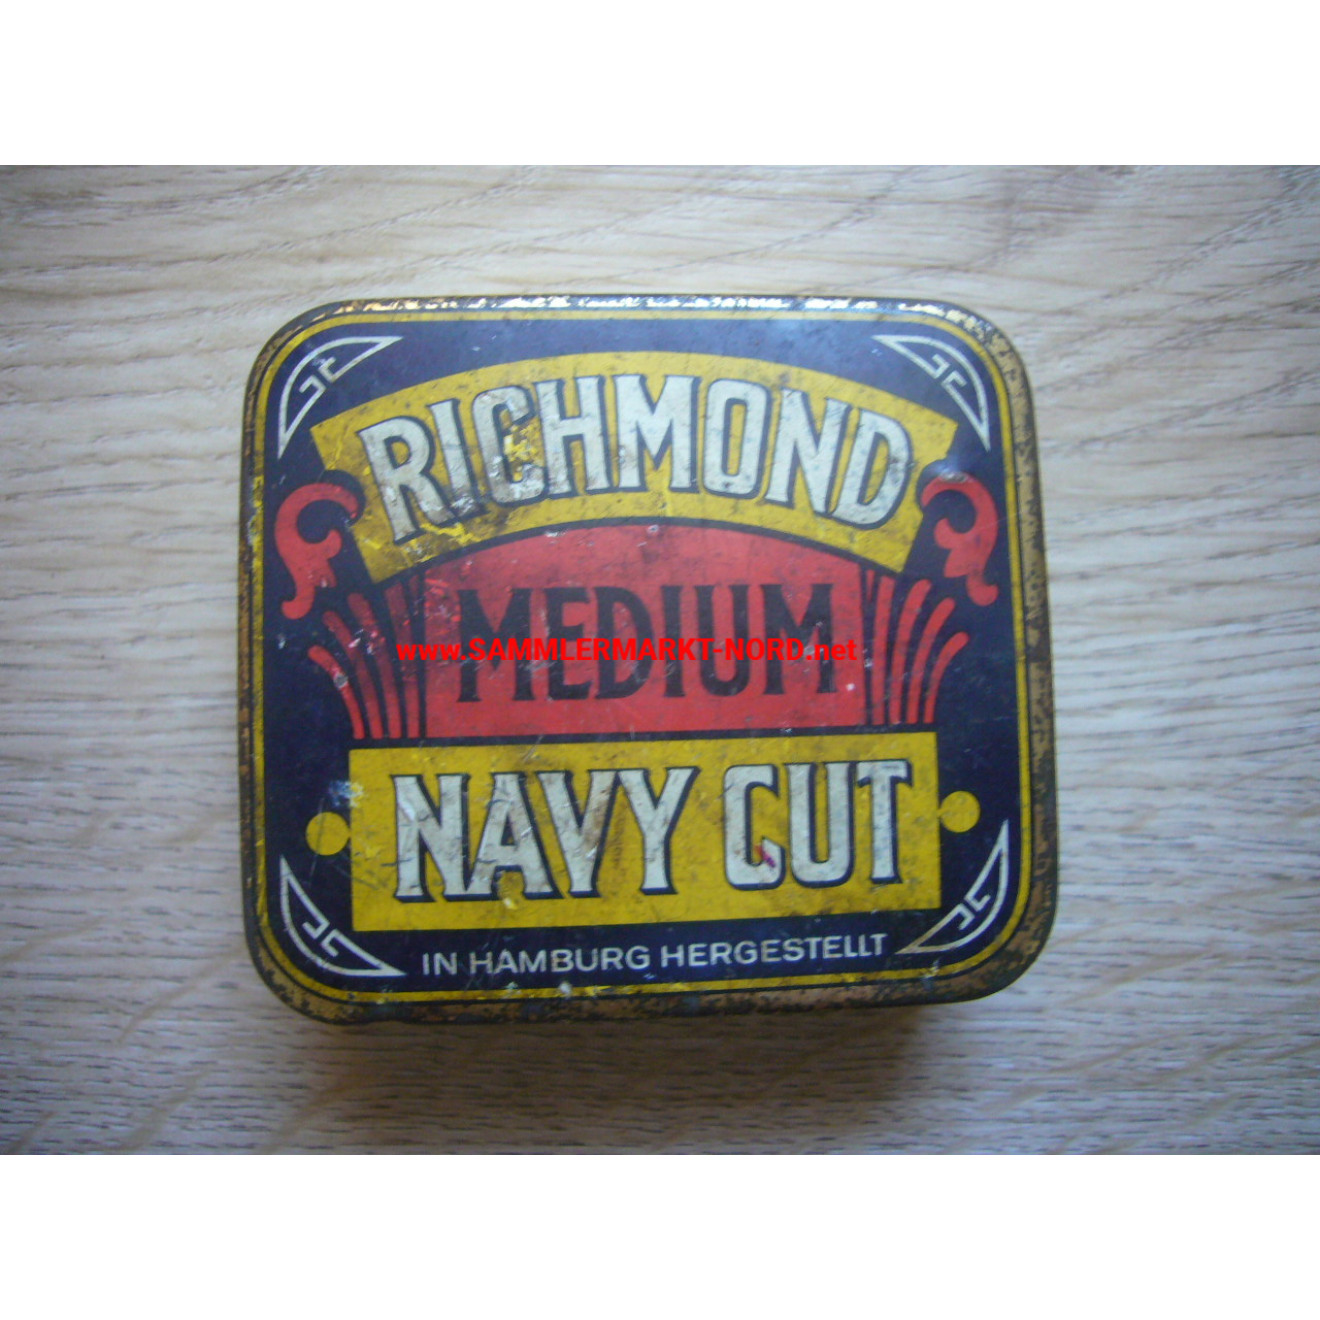 Wehrmacht Sutlers - Richmond Medium Navy Cut - Tobacco Tin